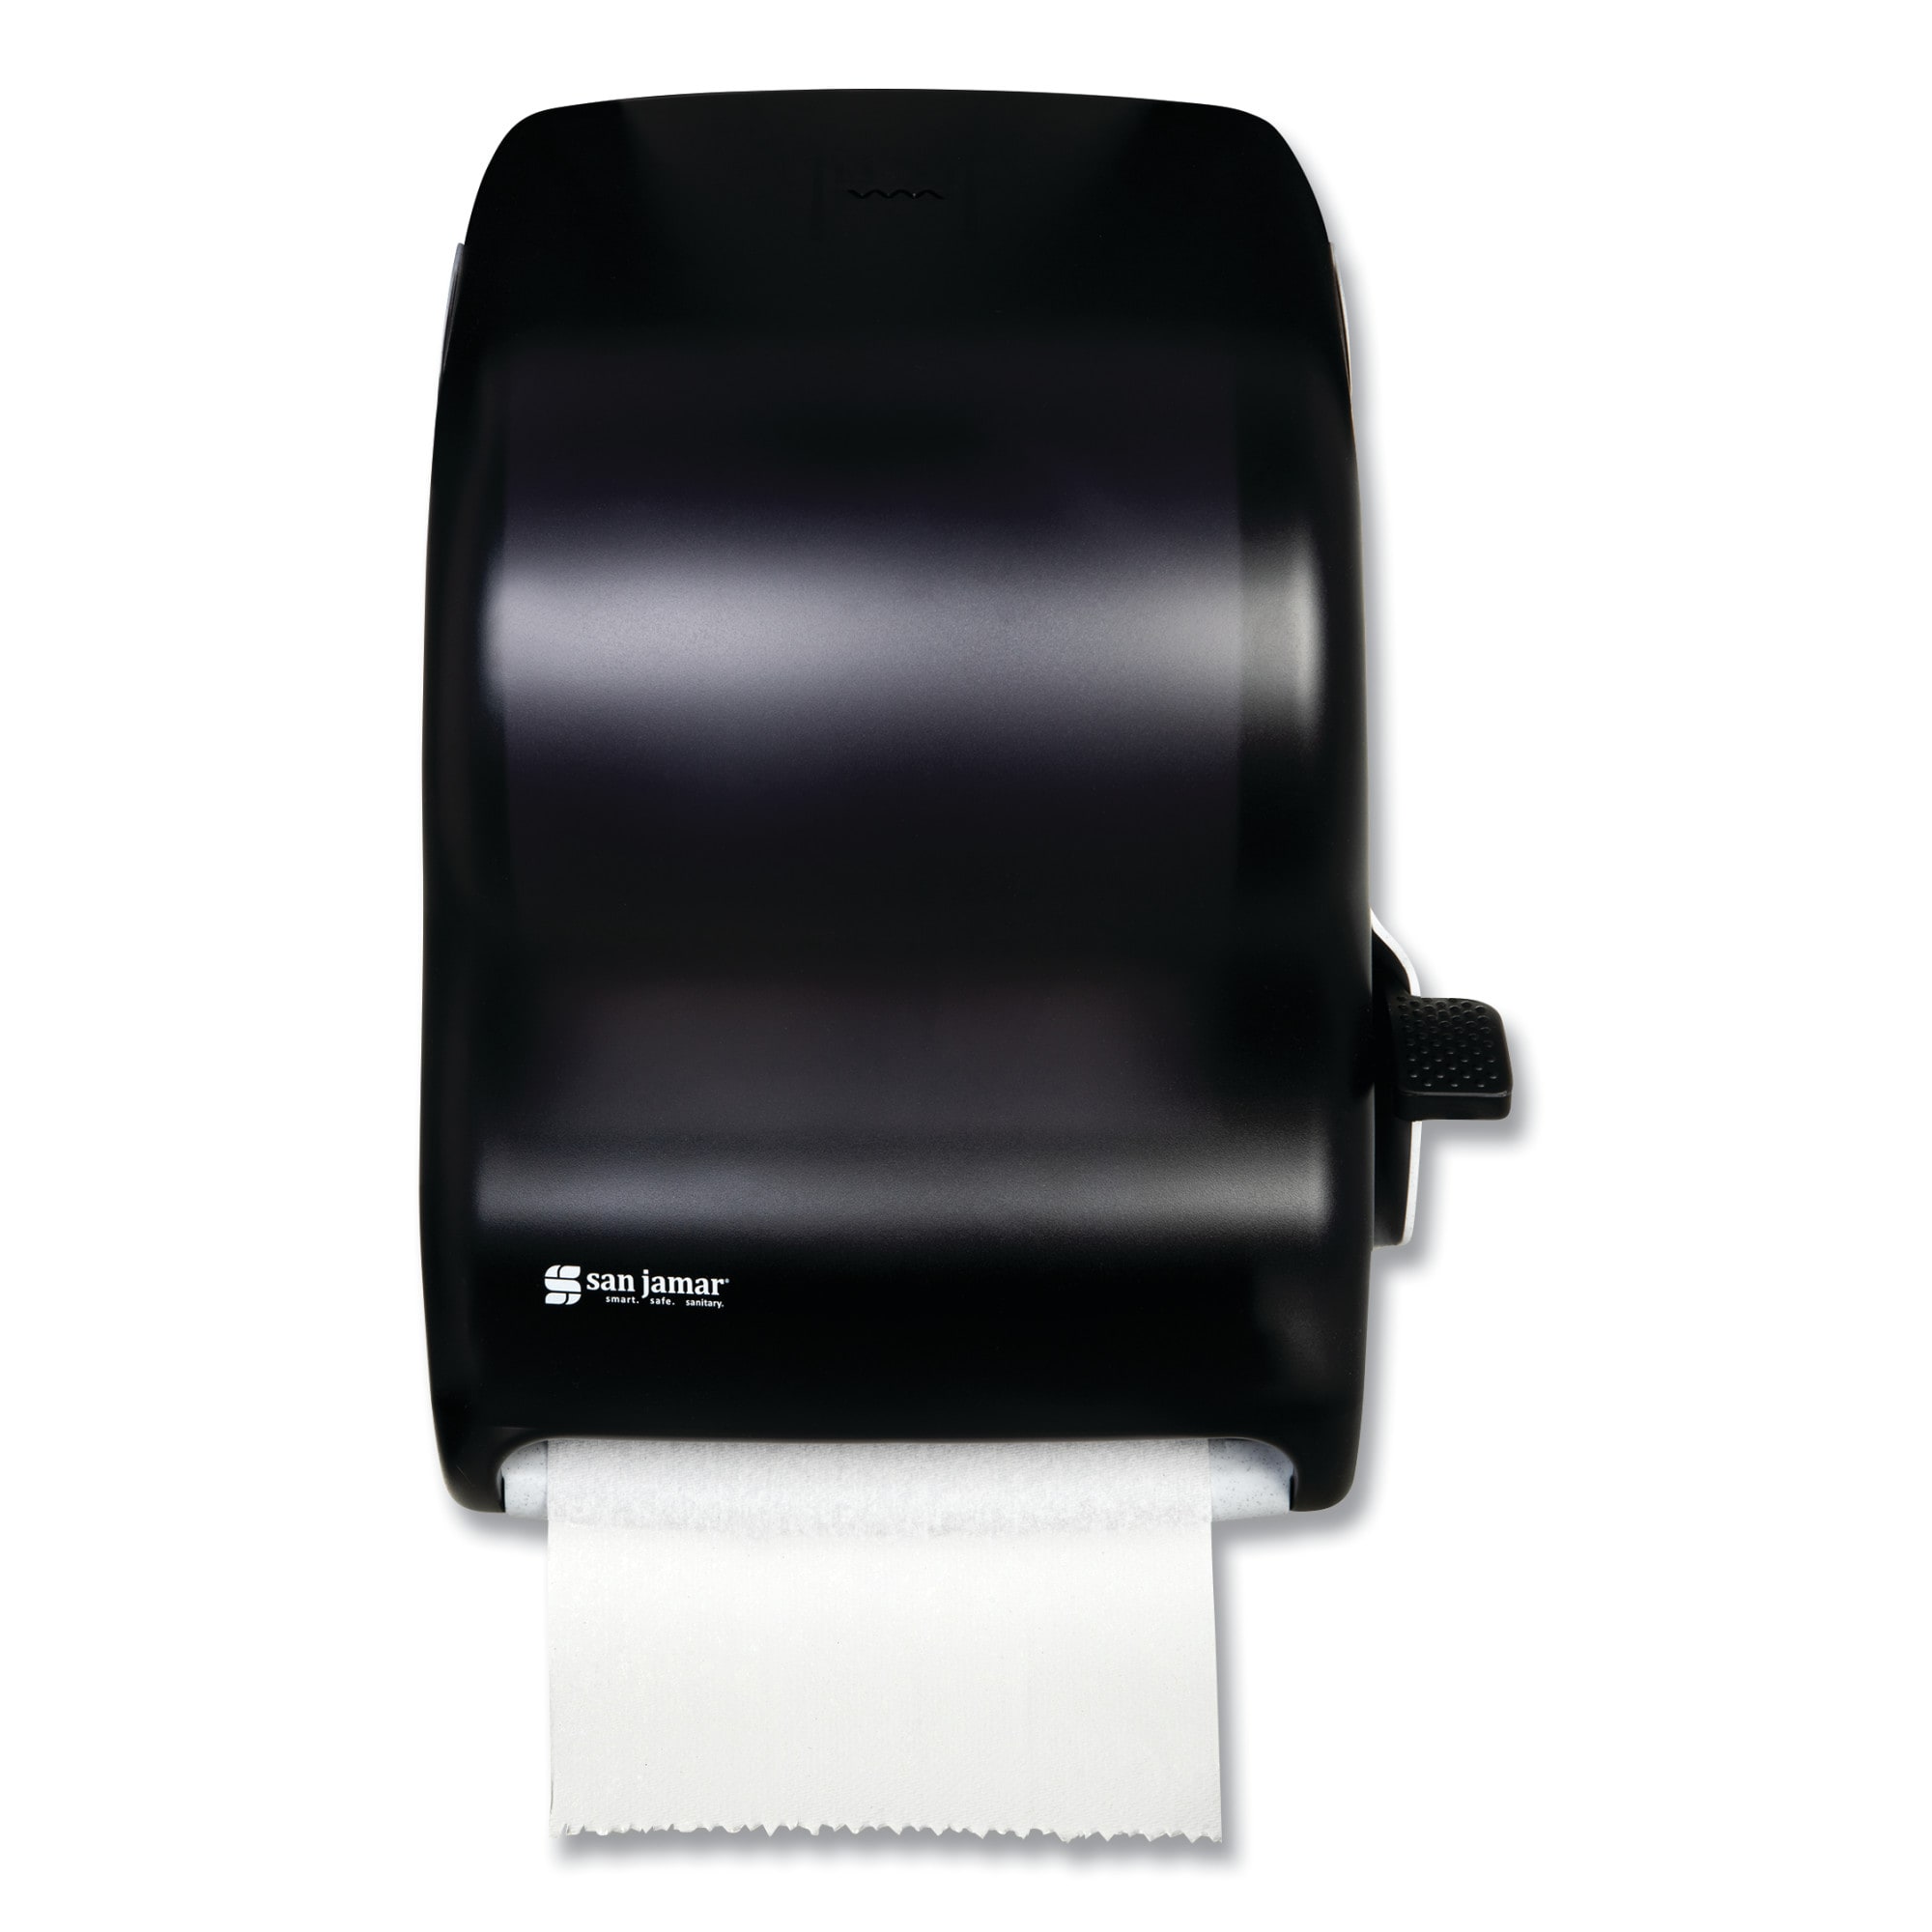 San Jamar Transparent Black Pearl Lever Control Paper Towel Dispenser in  the Paper Towel Dispensers department at